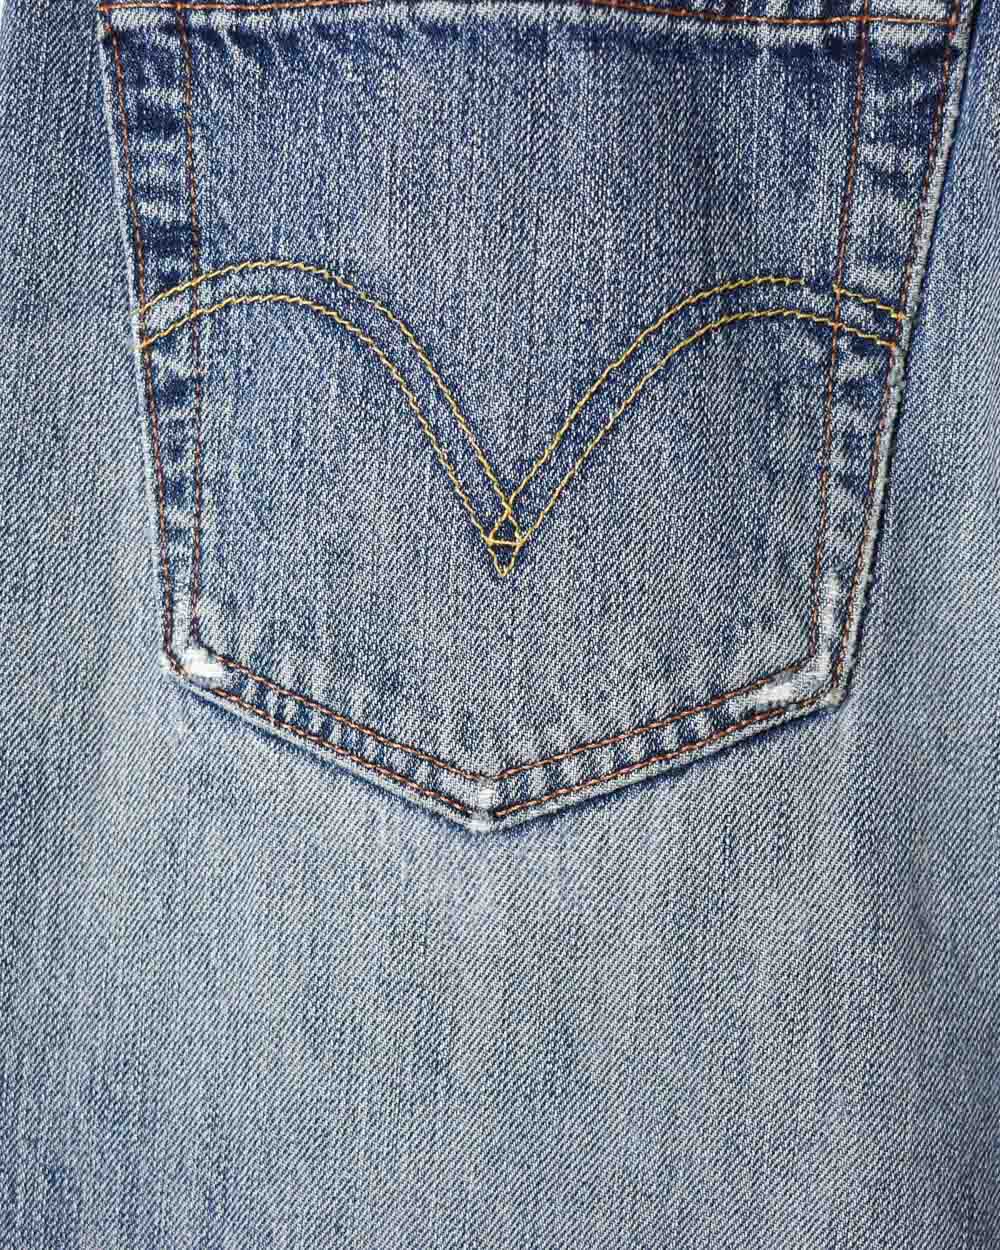 Blue Levi's Distressed 501 Jeans - W36 L31